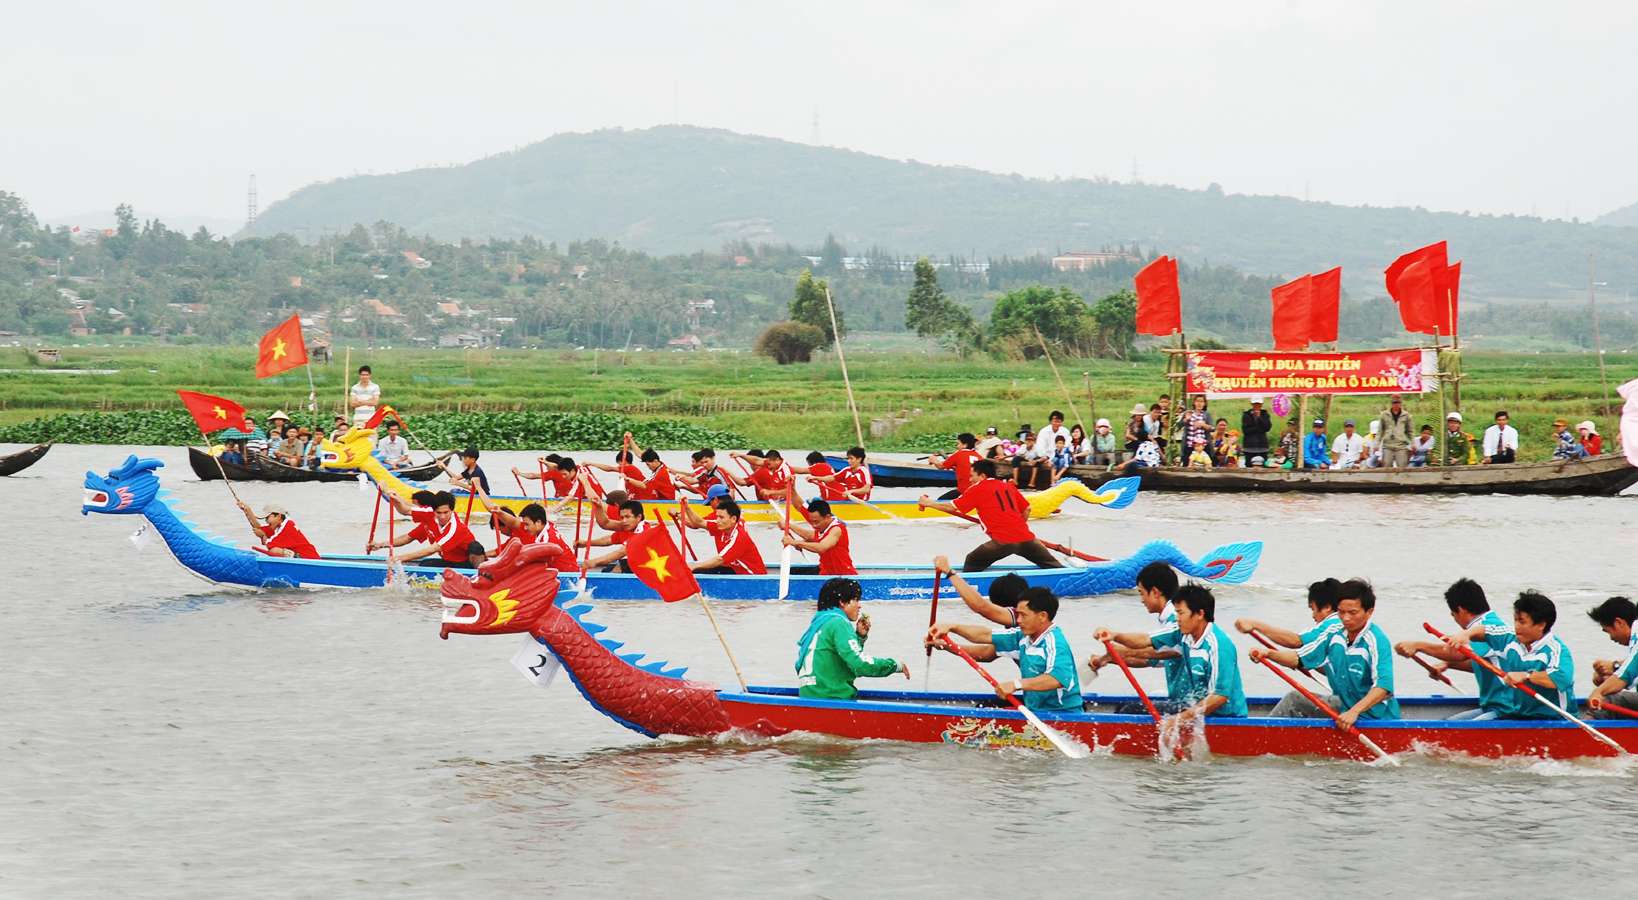 Lễ hội đua thuyền Đầm Ô Loan với những chiếc thuyền nhiêu màu sắc, có rất nhiều người tham gia chơi và cổ vũ